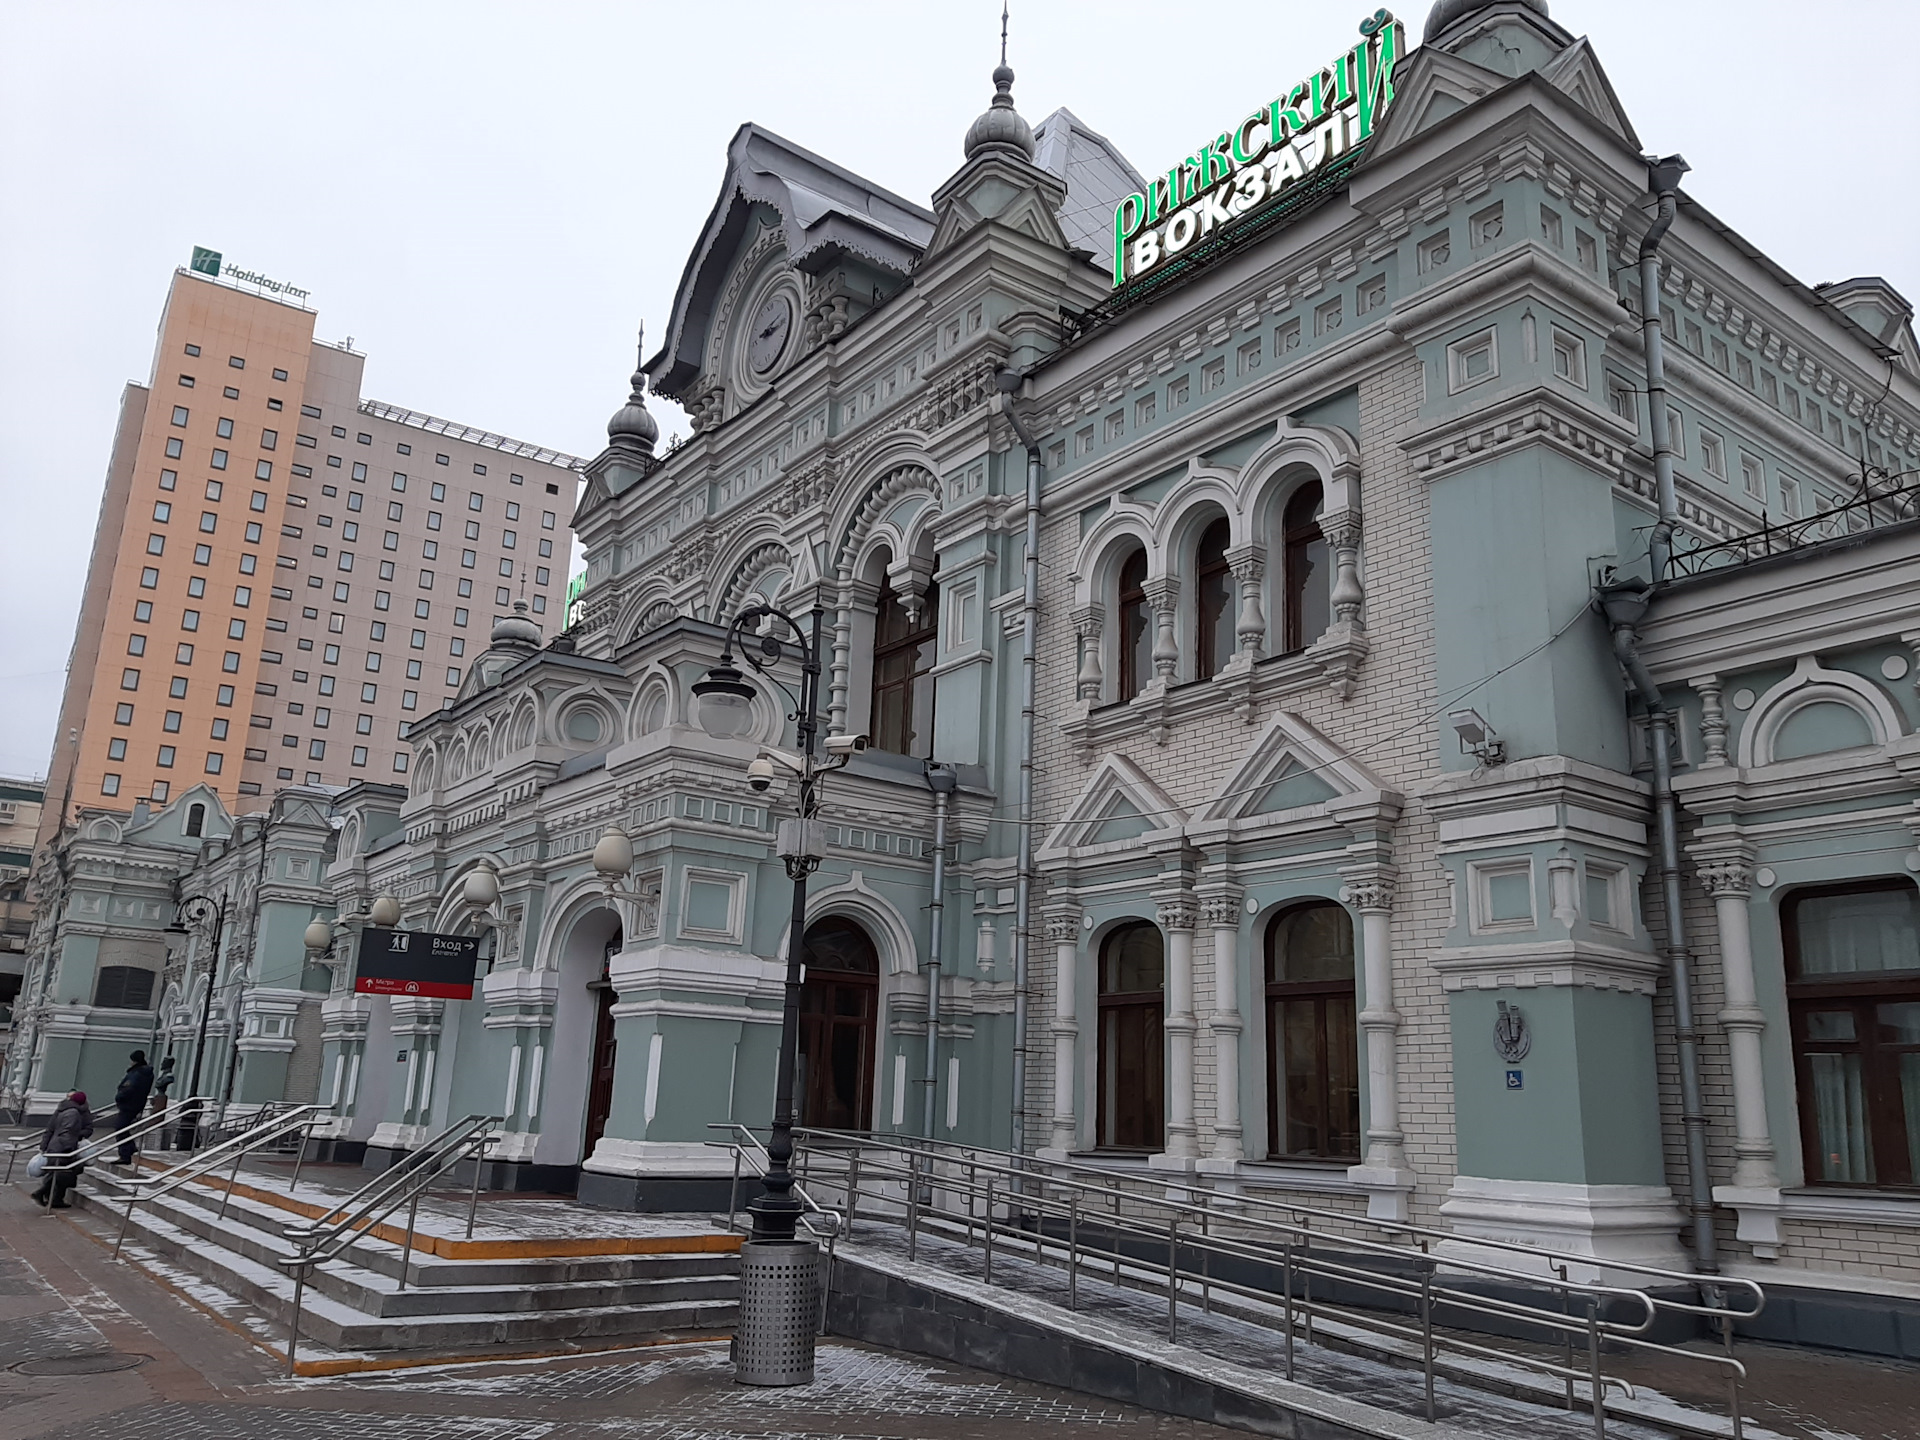 Рижский вокзал в москве